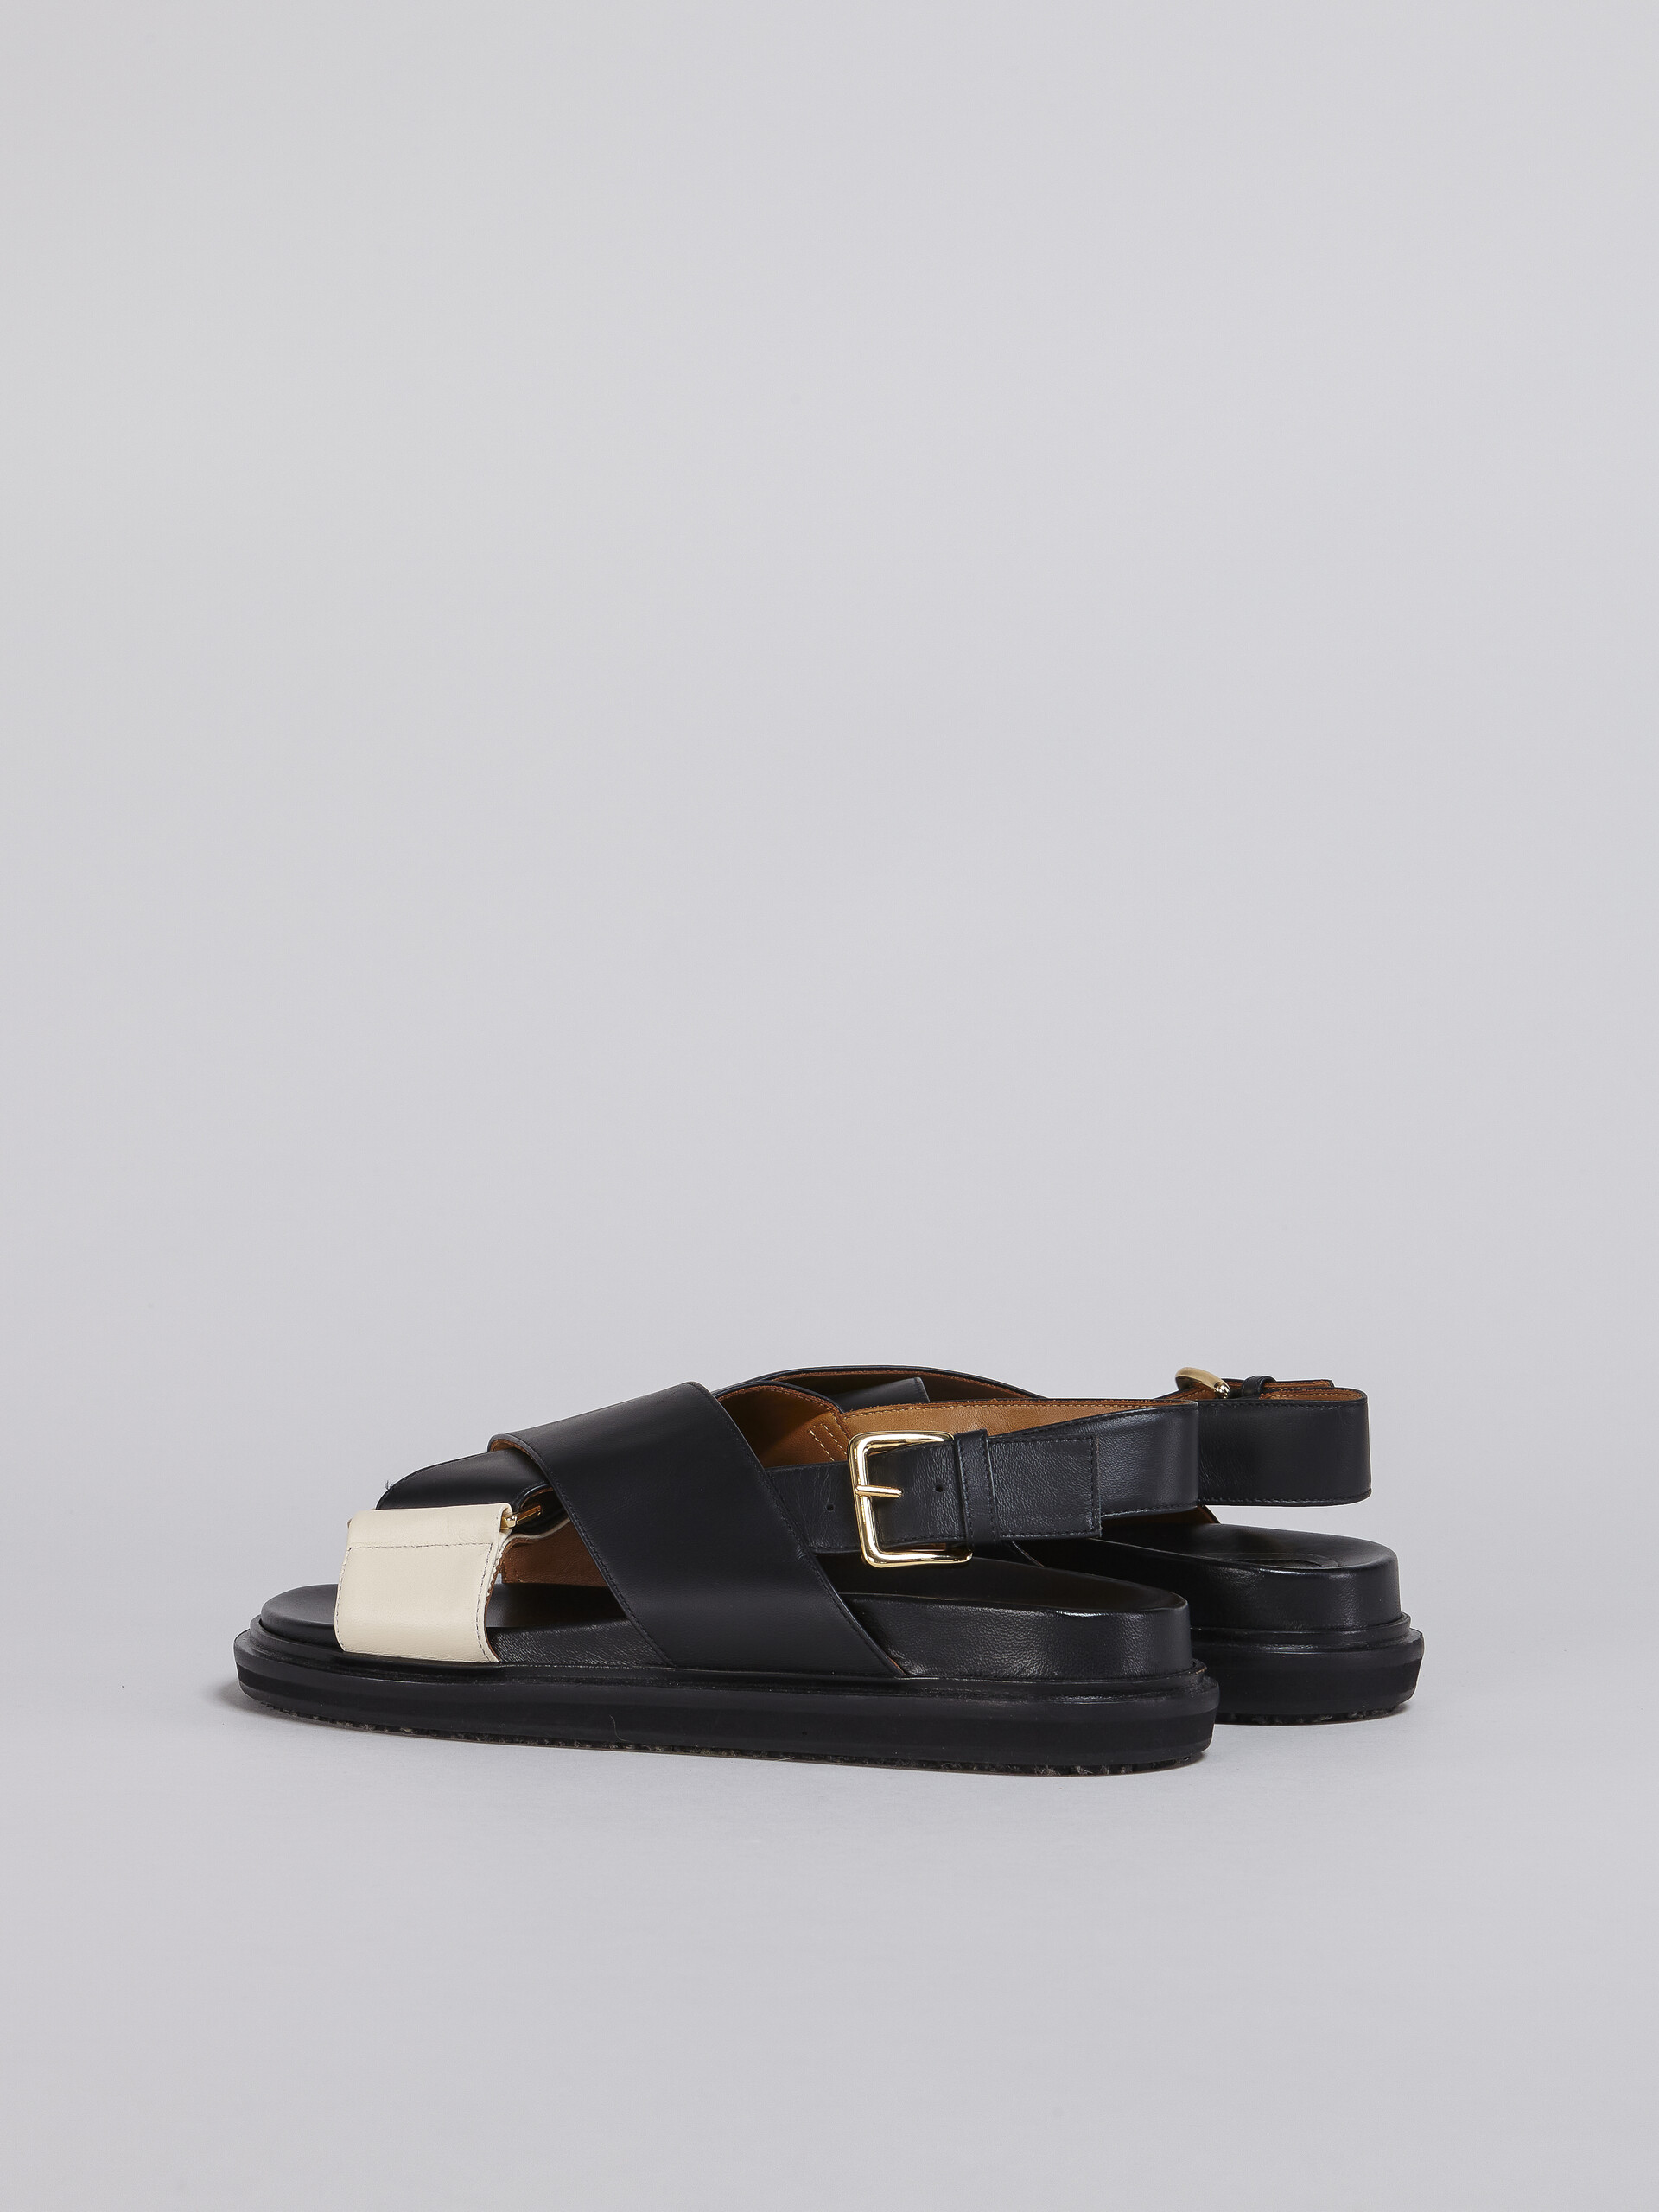 Sandales Fussbett en cuir noir et blanc - Sandales - Image 3